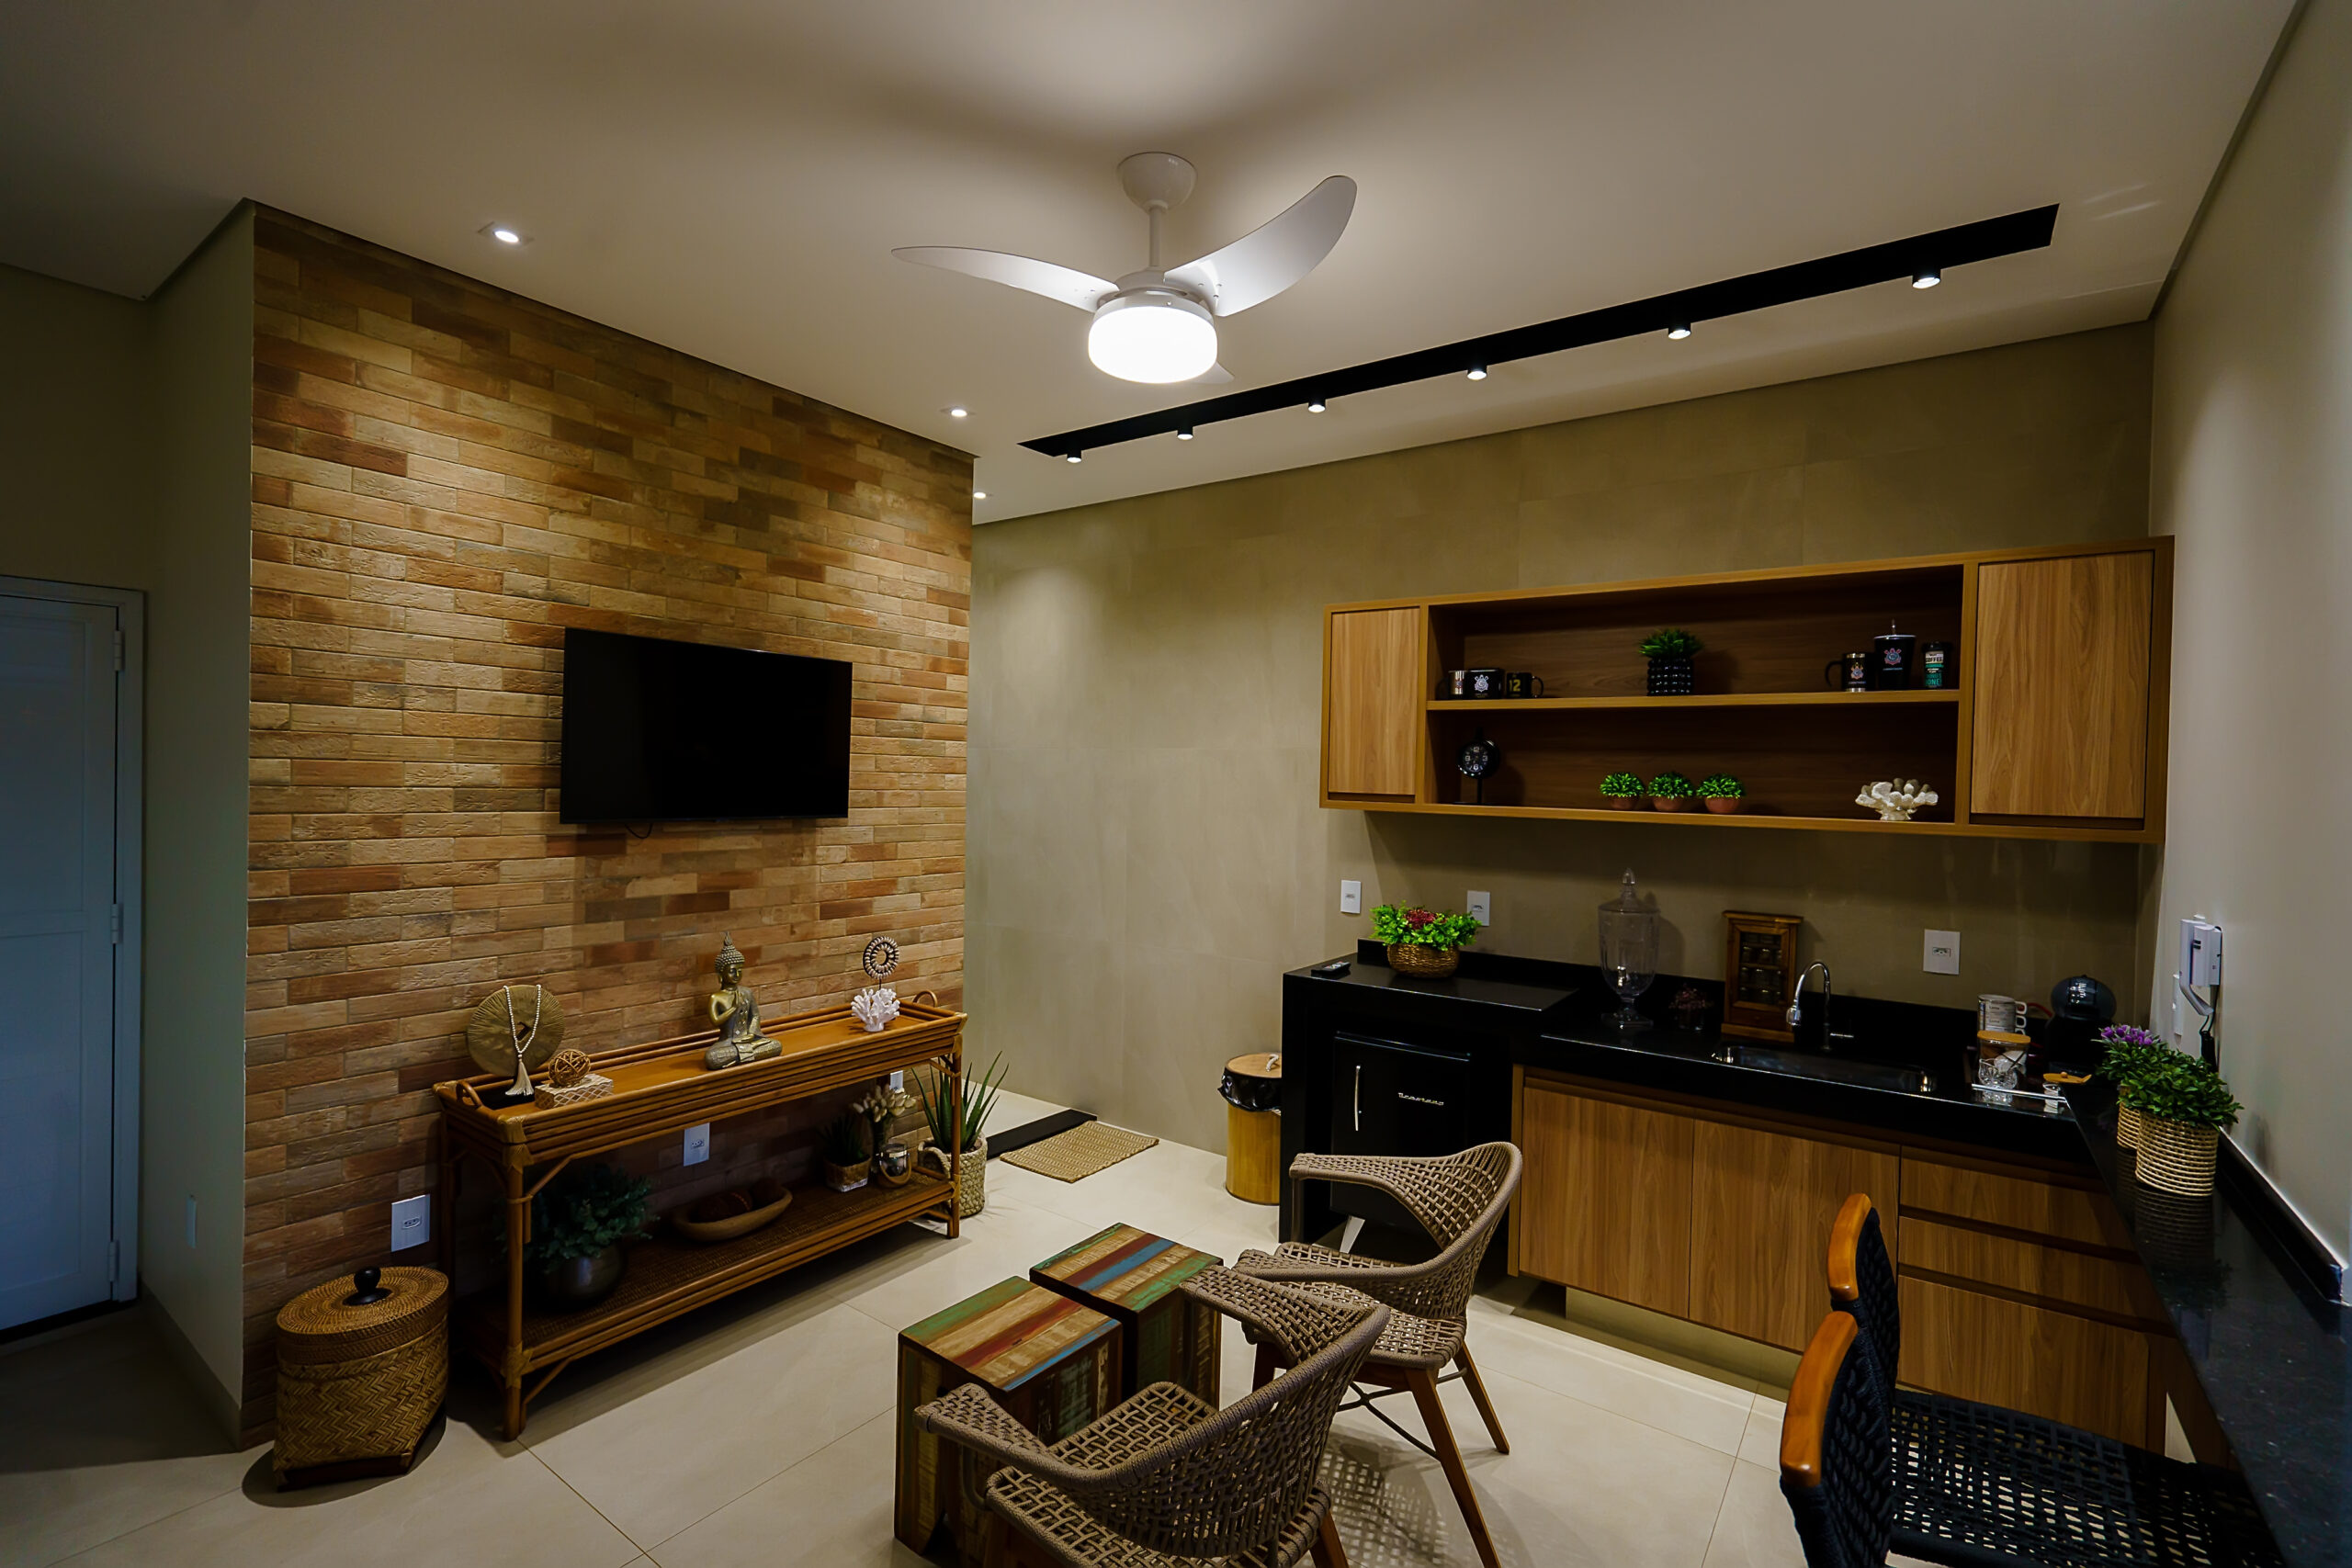 iluminação residencial, área gourmet integrada com sala de estar interna, iluminação com trilho eletrificado, spots e ventilador de teto